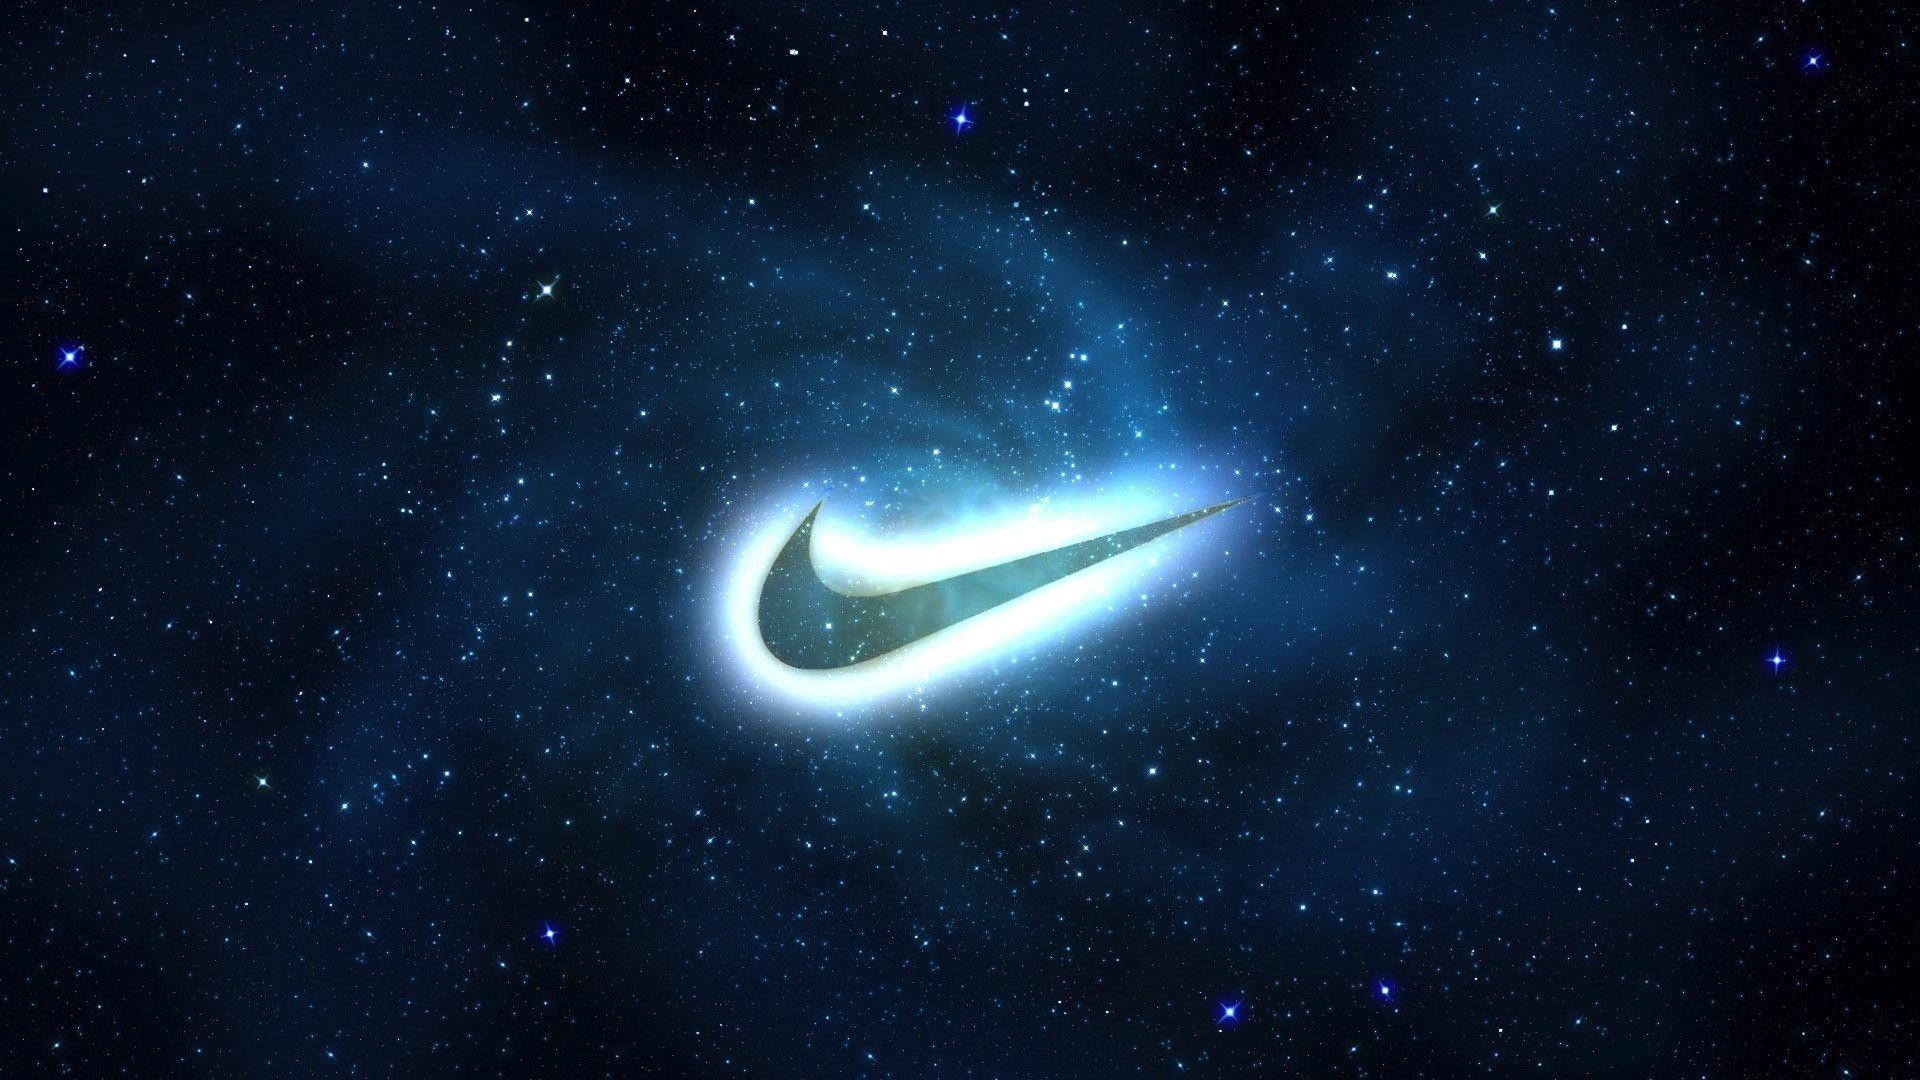 Bộ sưu tập ảnh nền desktop Nike Galaxy sẽ làm tăng tính thẩm mỹ cho máy tính của bạn. Với những hình ảnh thiên văn, các hành tinh và ngôi sao được kết hợp rất tinh tế với logo Nike, bộ sưu tập này sẽ làm cho máy tính của bạn trở nên tươi sáng và đầy sống động.